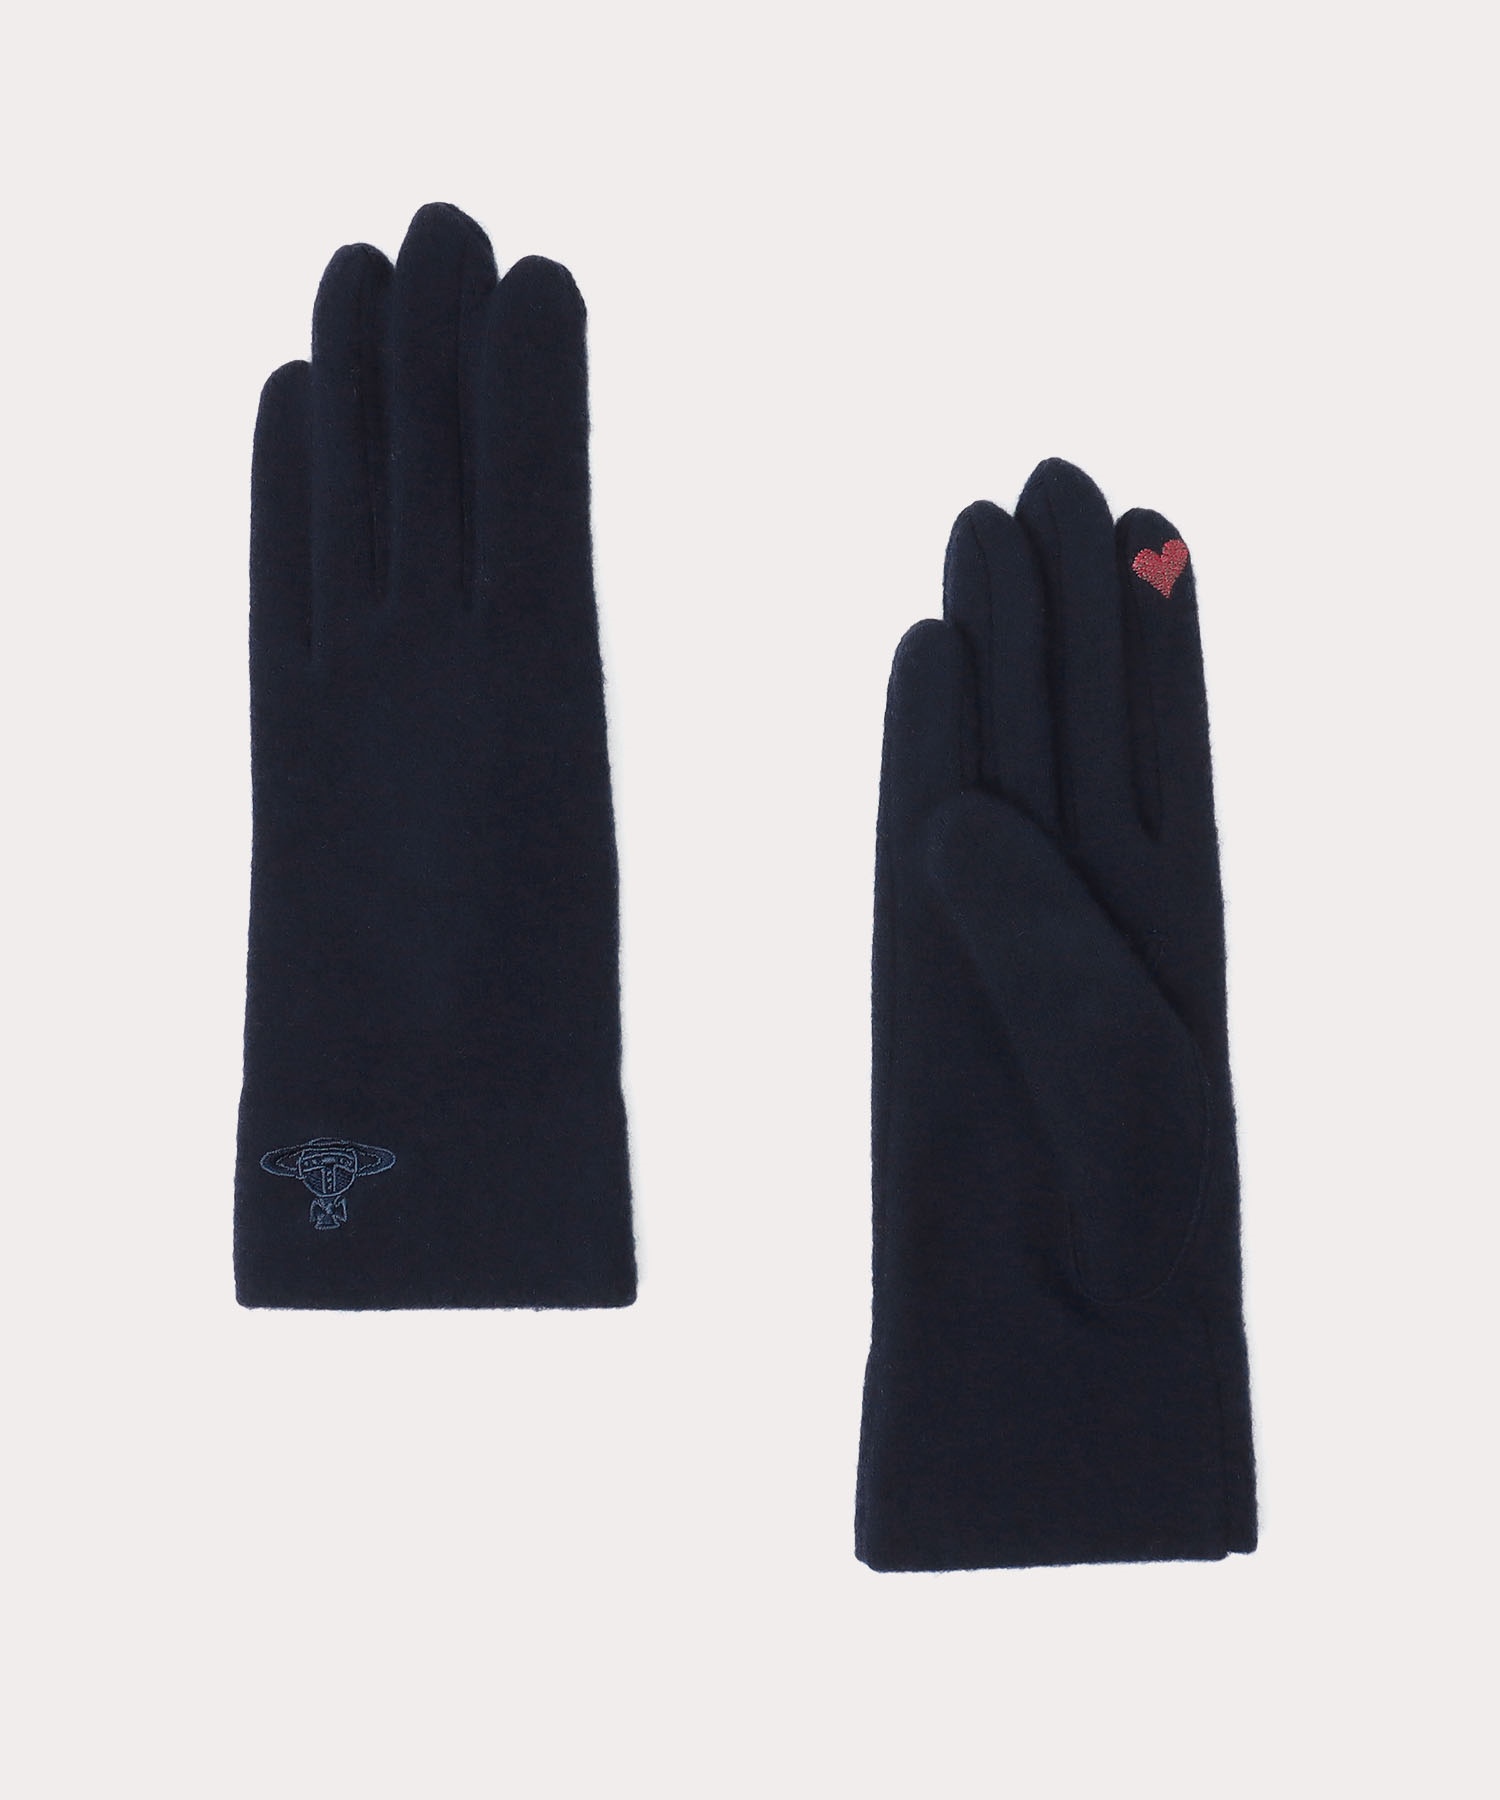 Vivienne Westwood 手袋 - 手袋